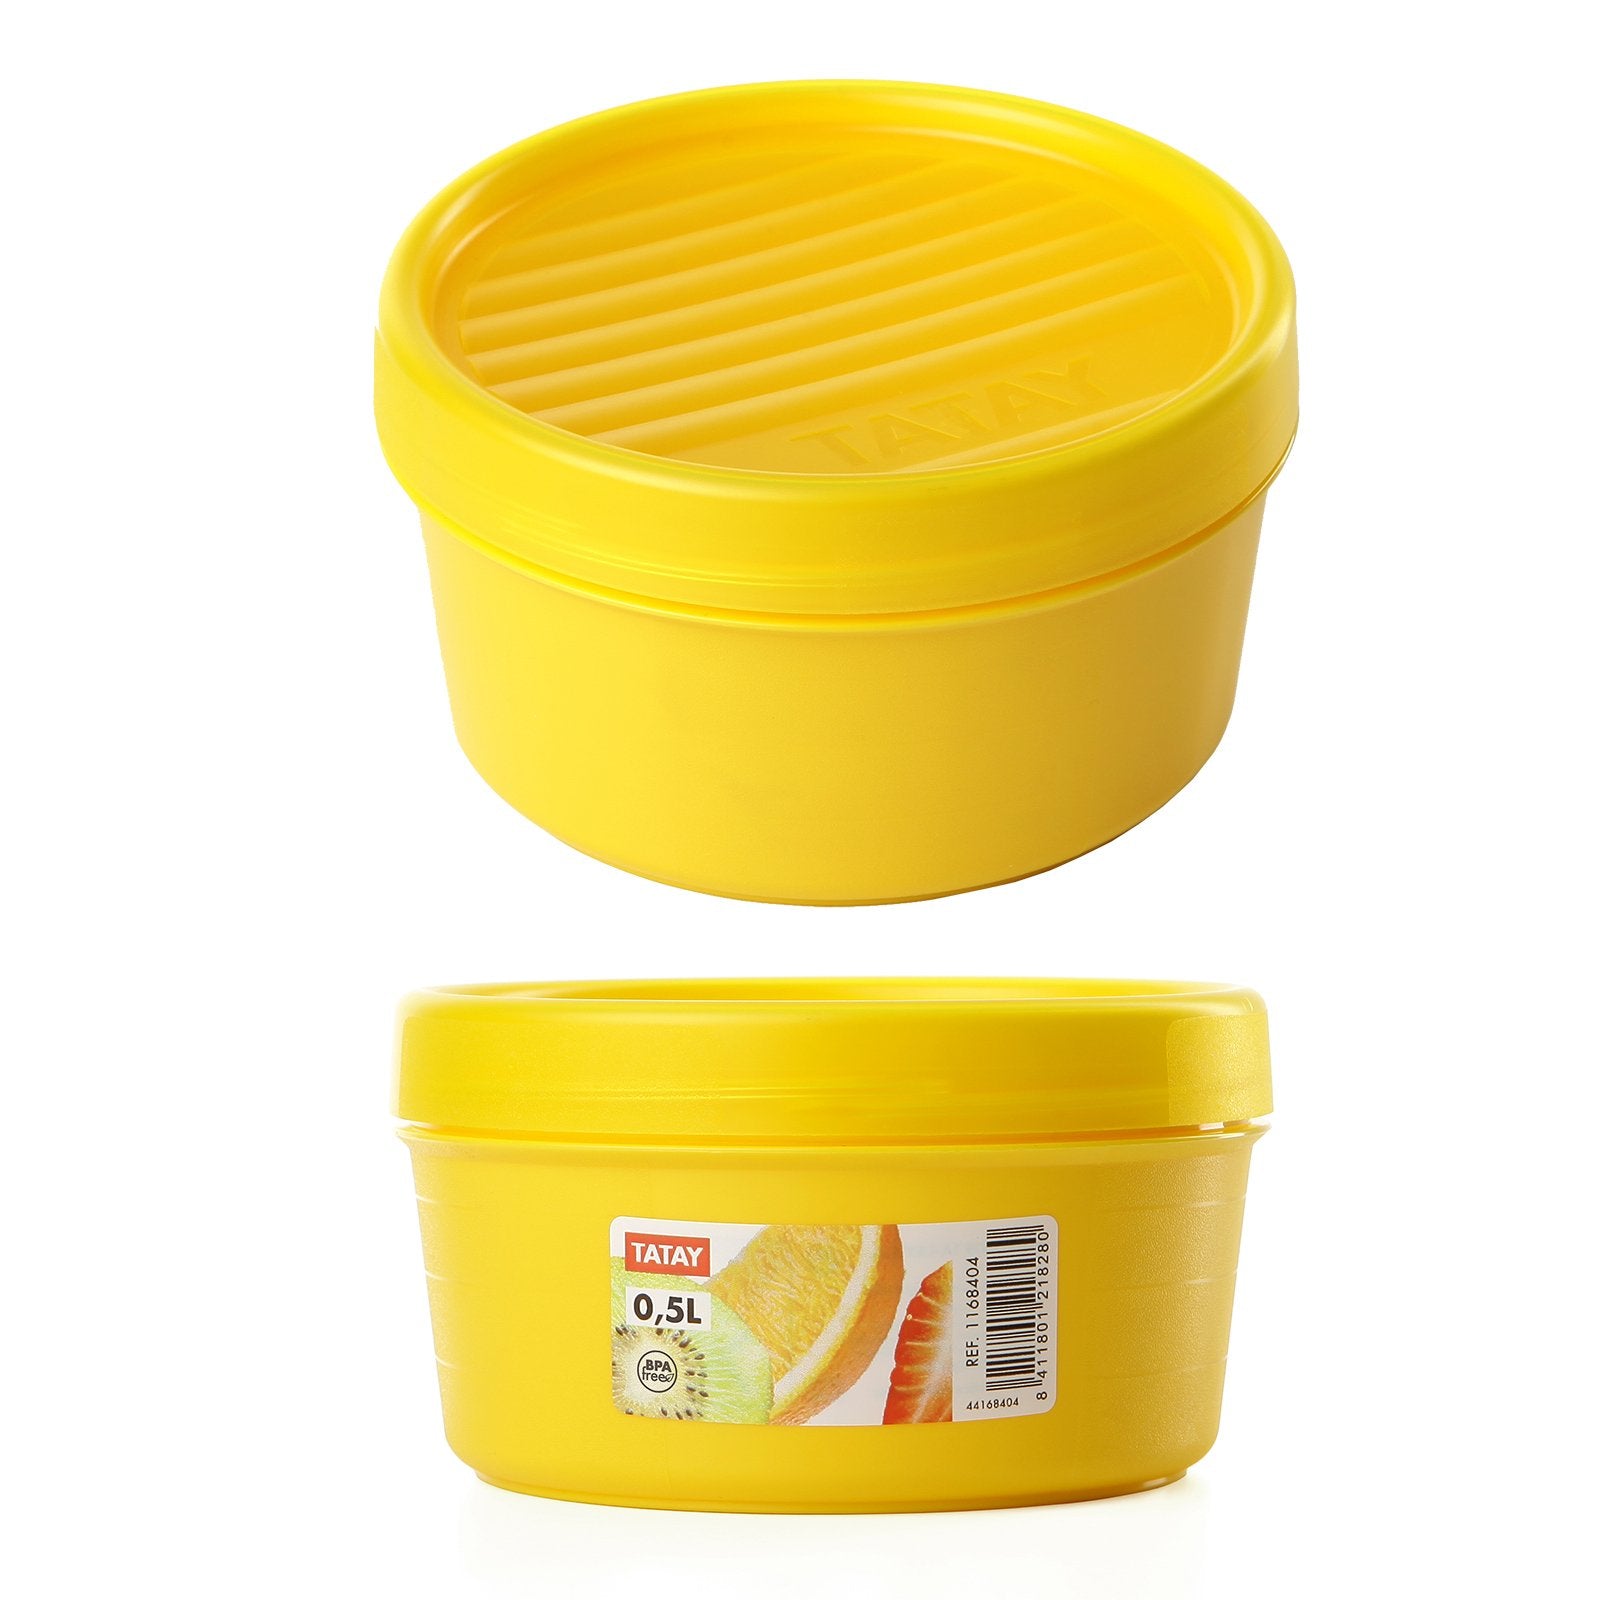 TATAY 1167103 - Porta Sandwich Reutilizable y Ecológico Libre de BPA